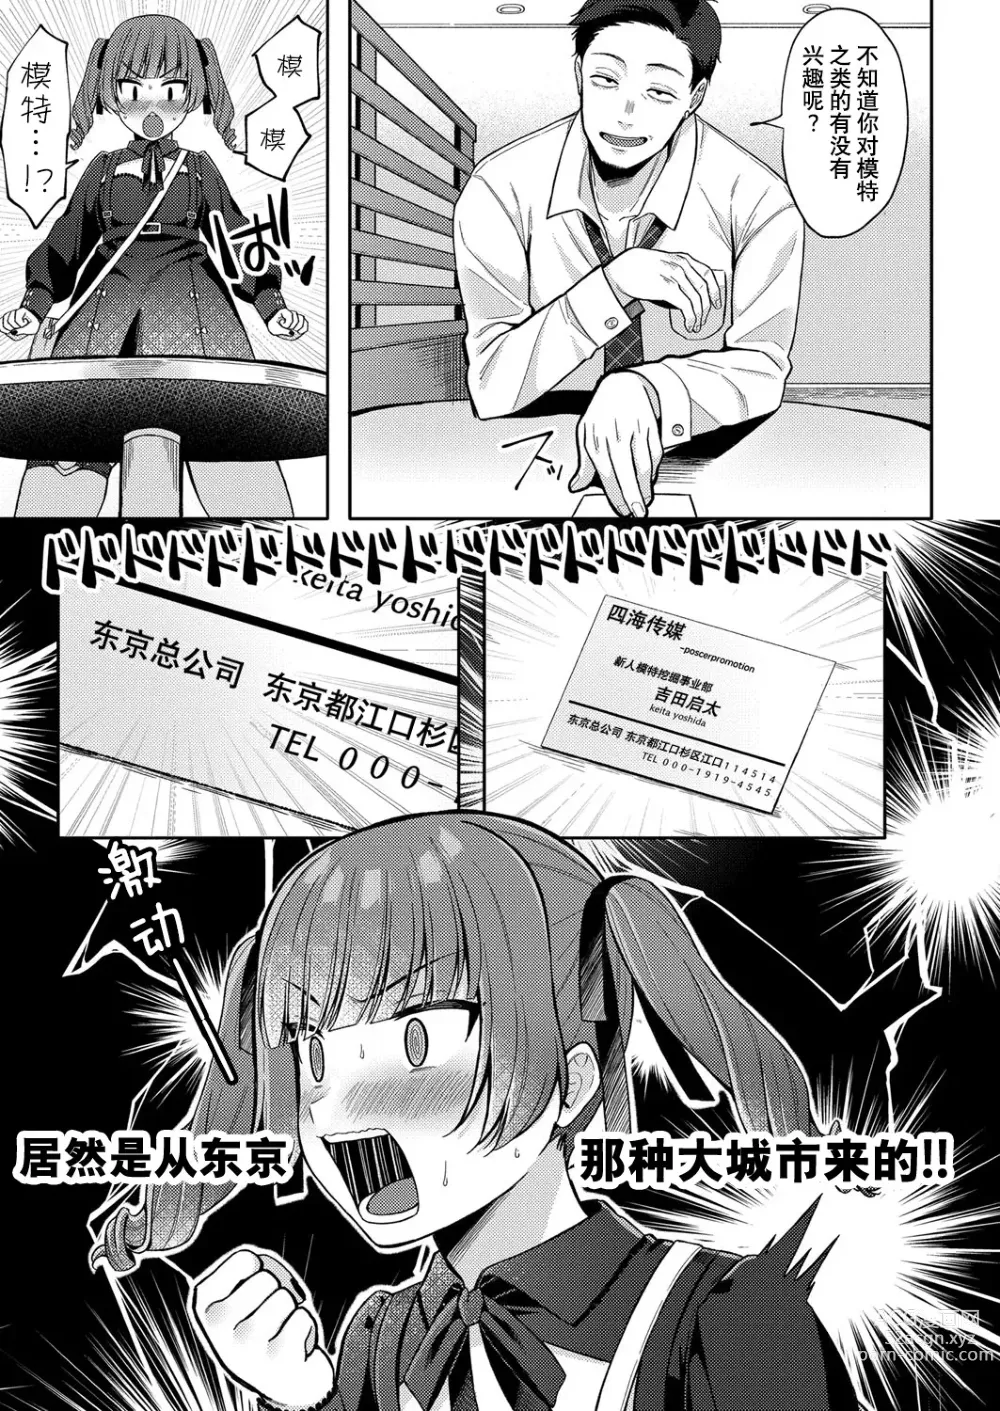 Page 5 of manga Yumemiru Masegaki ~Hatsudori Debut~